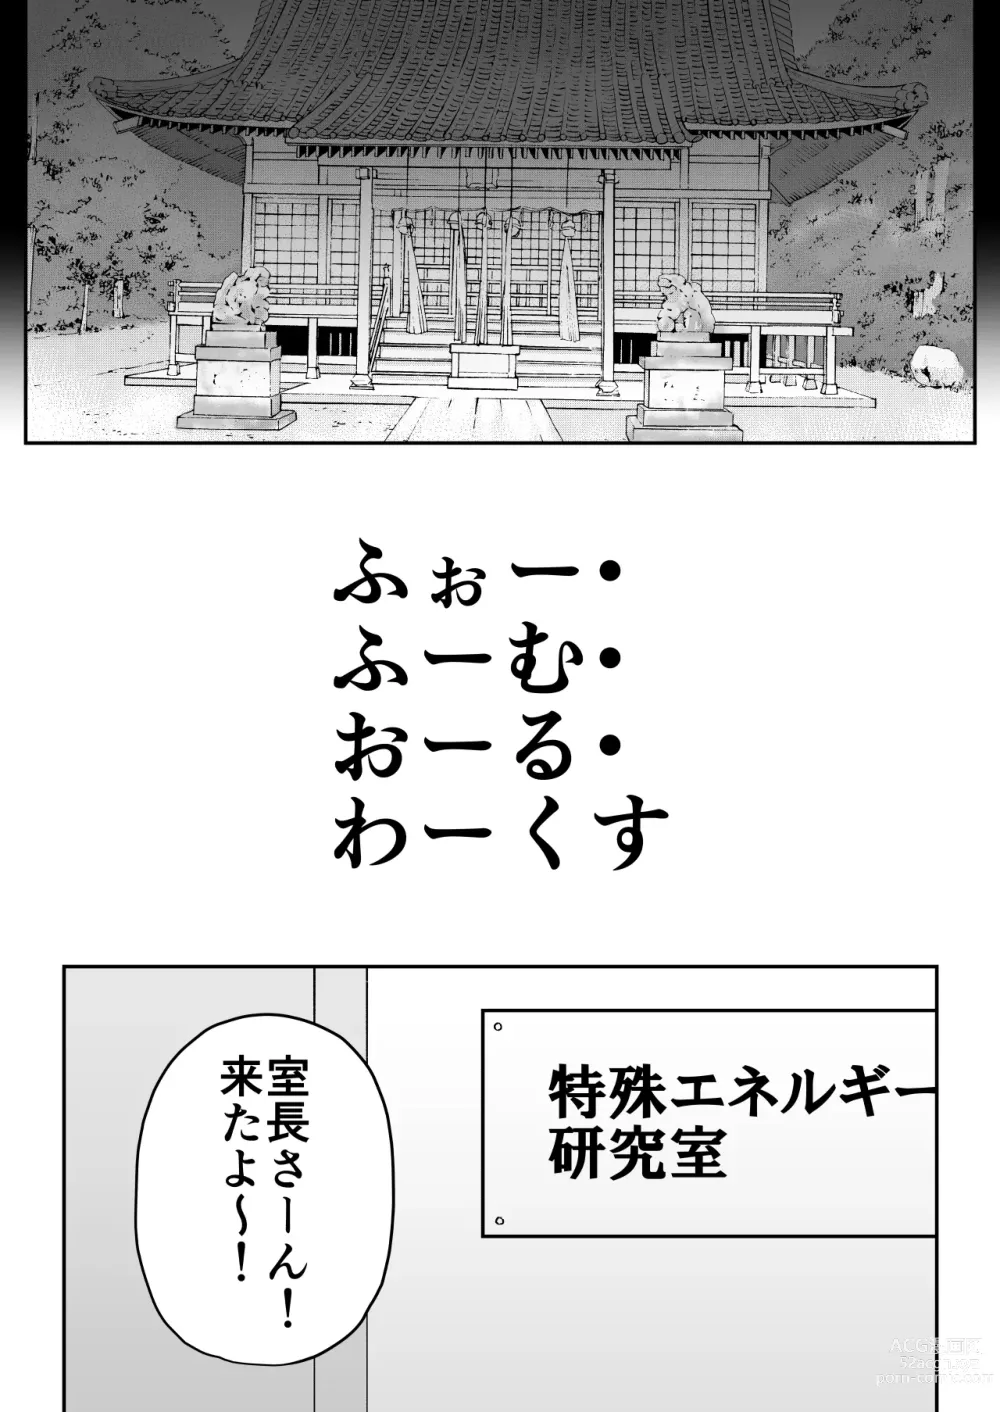 Page 8 of doujinshi Whoo-hoo-hoo-roo-lu-wax.